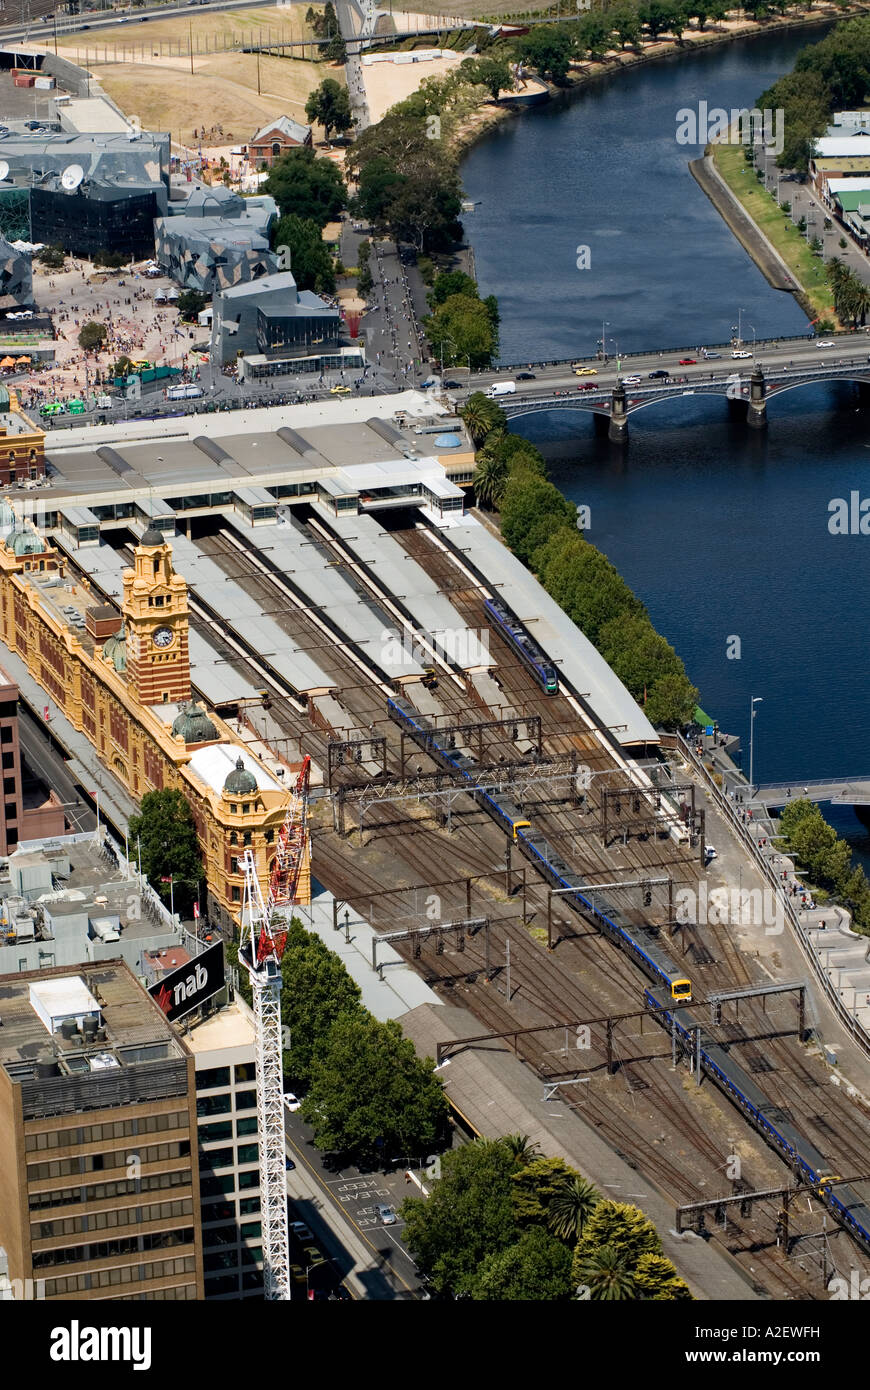 La gare de Flinders Street et de la rivière Yarra vue de Melbourne Observation Deck le Rialto Victoria Australie Banque D'Images